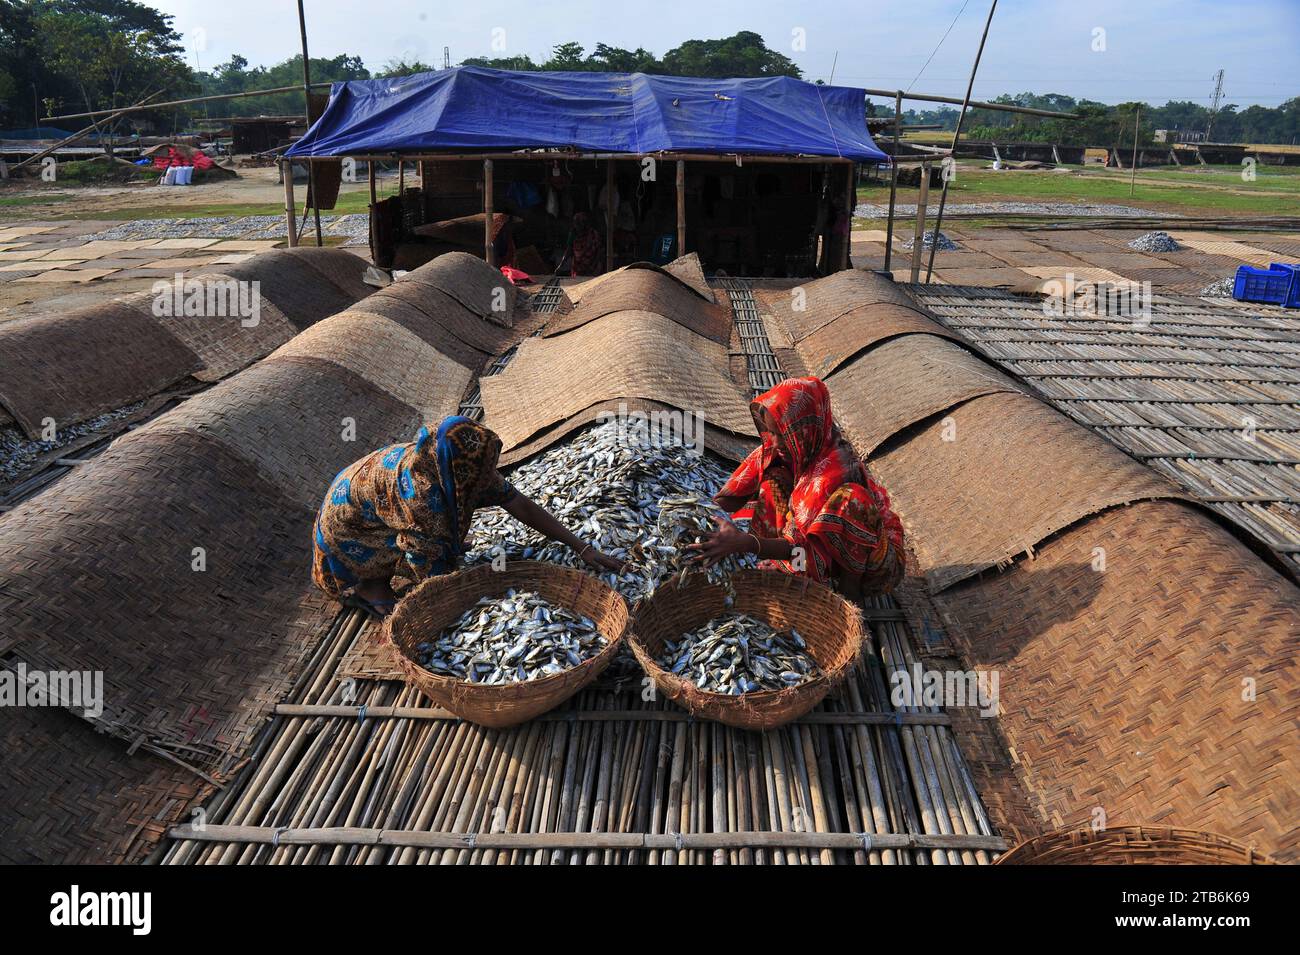 Die Arbeiter sind mit der Verarbeitung von getrocknetem Fisch in der Region Lama Kazi in Sylhet beschäftigt. Jedes Jahr, wenn die Wintersaison kommt, werden die kleinen Fischarten, die im lokalen Flusskanal Bilhaor gefangen werden, zu Großhandelspreisen gekauft, getrocknet und an Großhändler in verschiedenen Teilen des Landes verkauft, mit einem geschätzten Wert von Hunderten von Kronen Taka. Rund 70 Geschäftsleute bauen an bestimmten Orten Lofts, um Waren zu trocknen. 1500 bis 2000 Personen sind an der Trocknung von Waren beteiligt. Sylhet, Bangladesch. Stockfoto